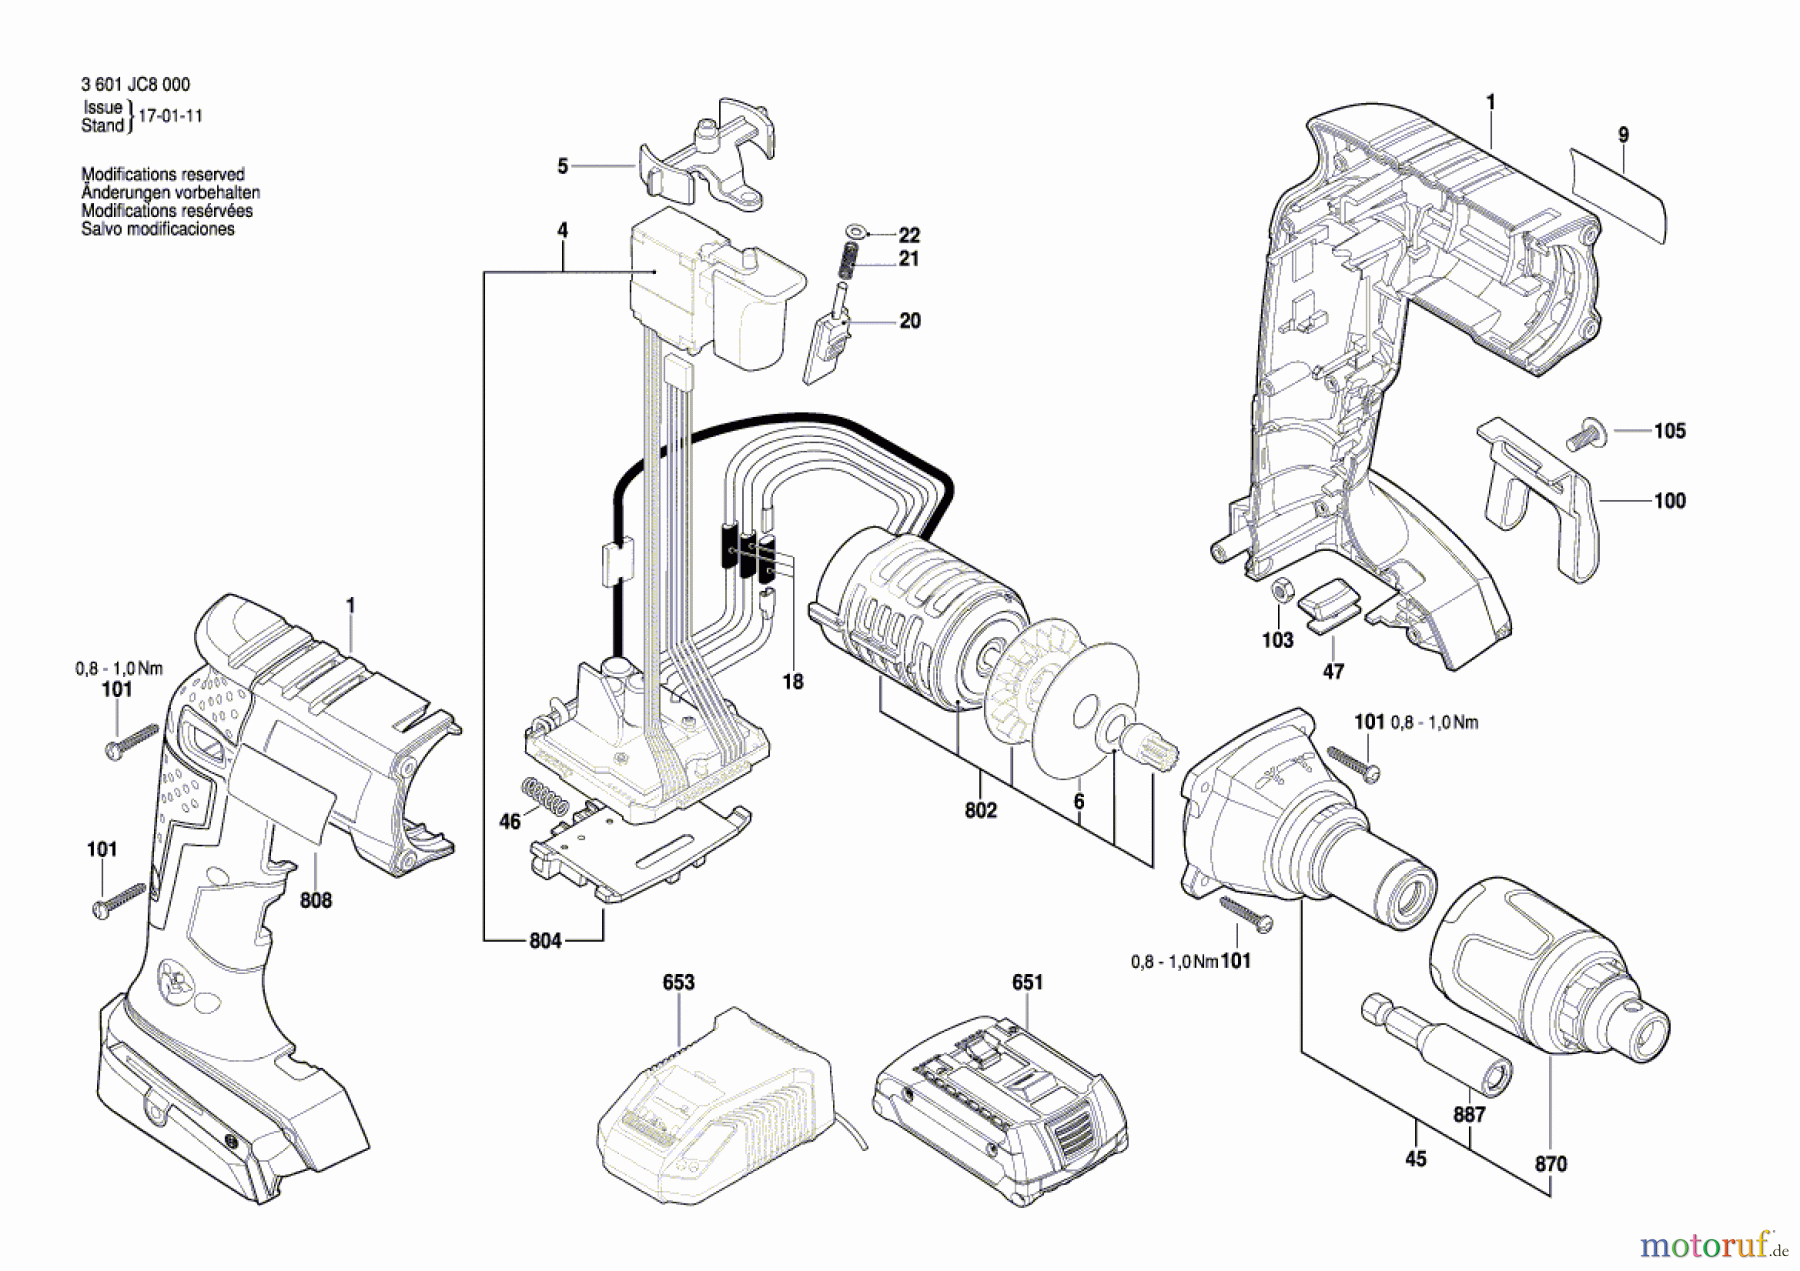  Bosch Akku Werkzeug Akku-Schrauber GSR 18 V-EC TE Seite 1